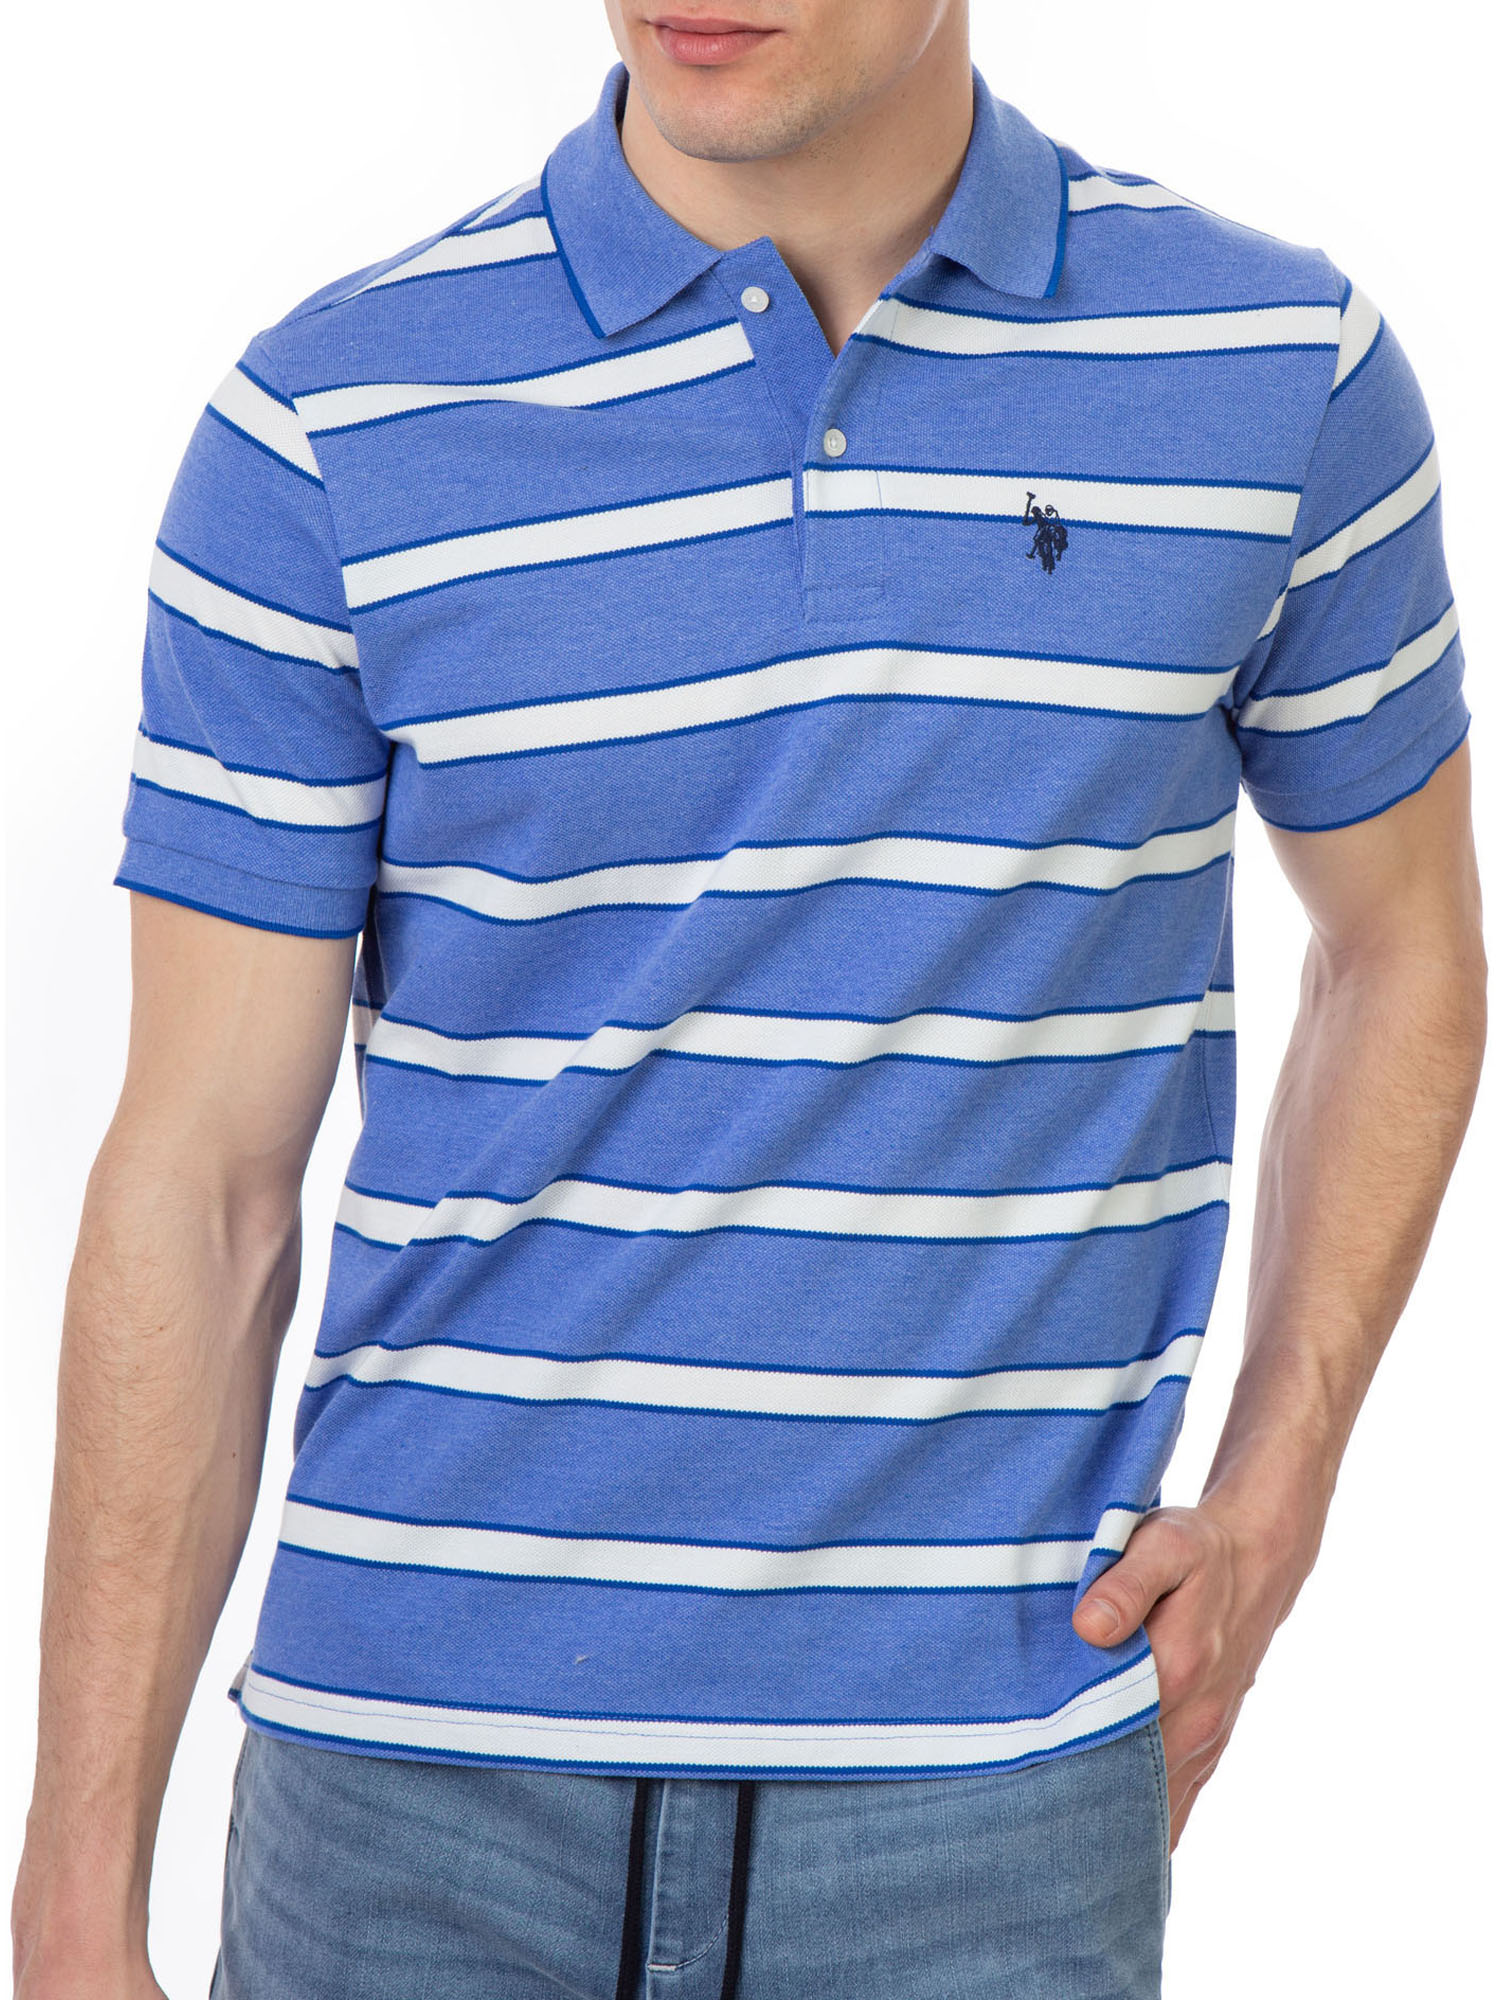 U.S. Polo Assn. Men's Striped Pique Polo Shirt - image 5 of 5